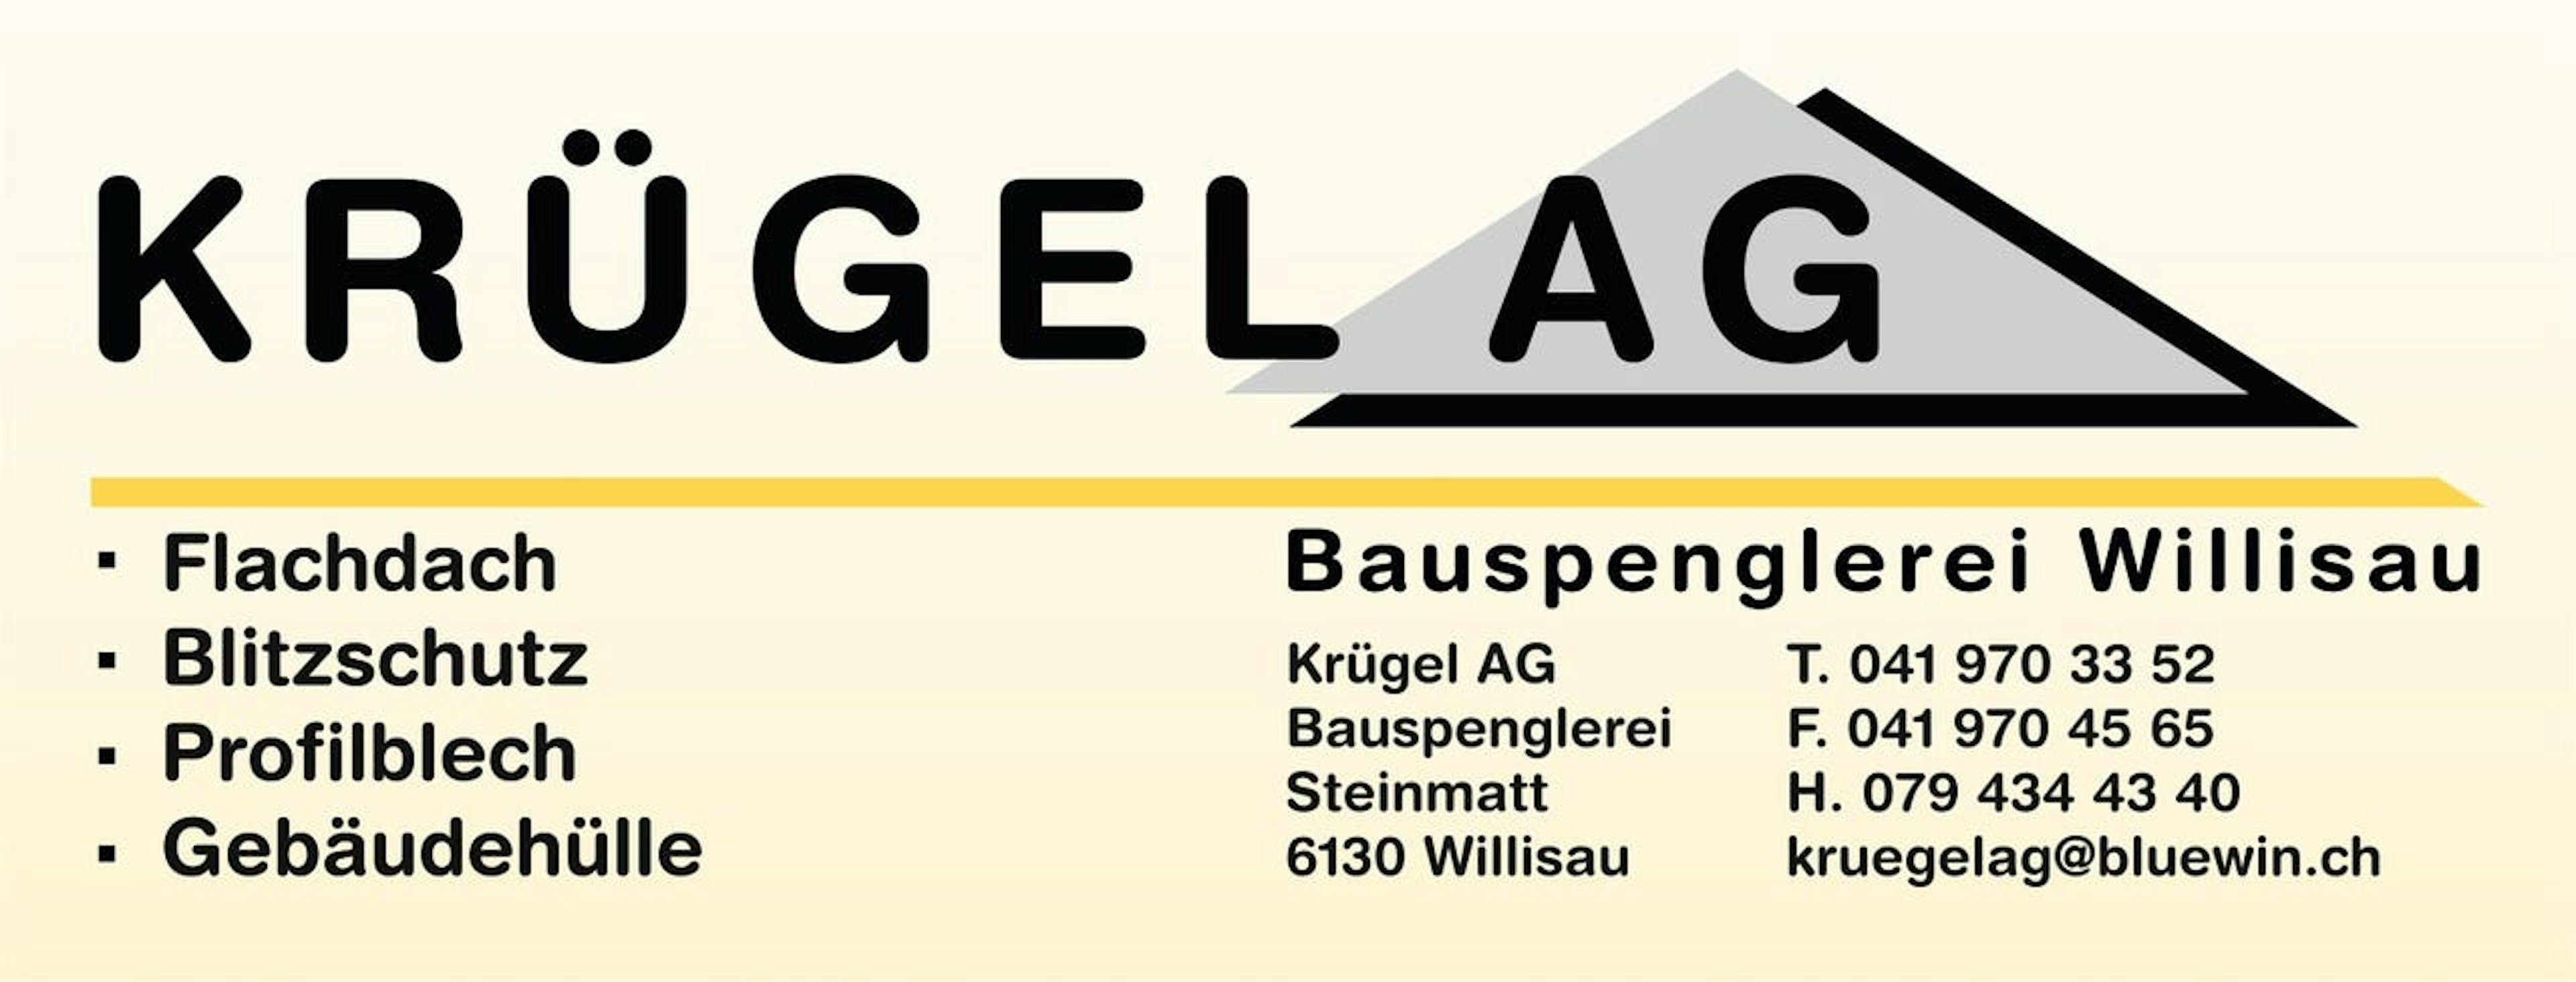 Logo der Krügel AG Bauspenglerei